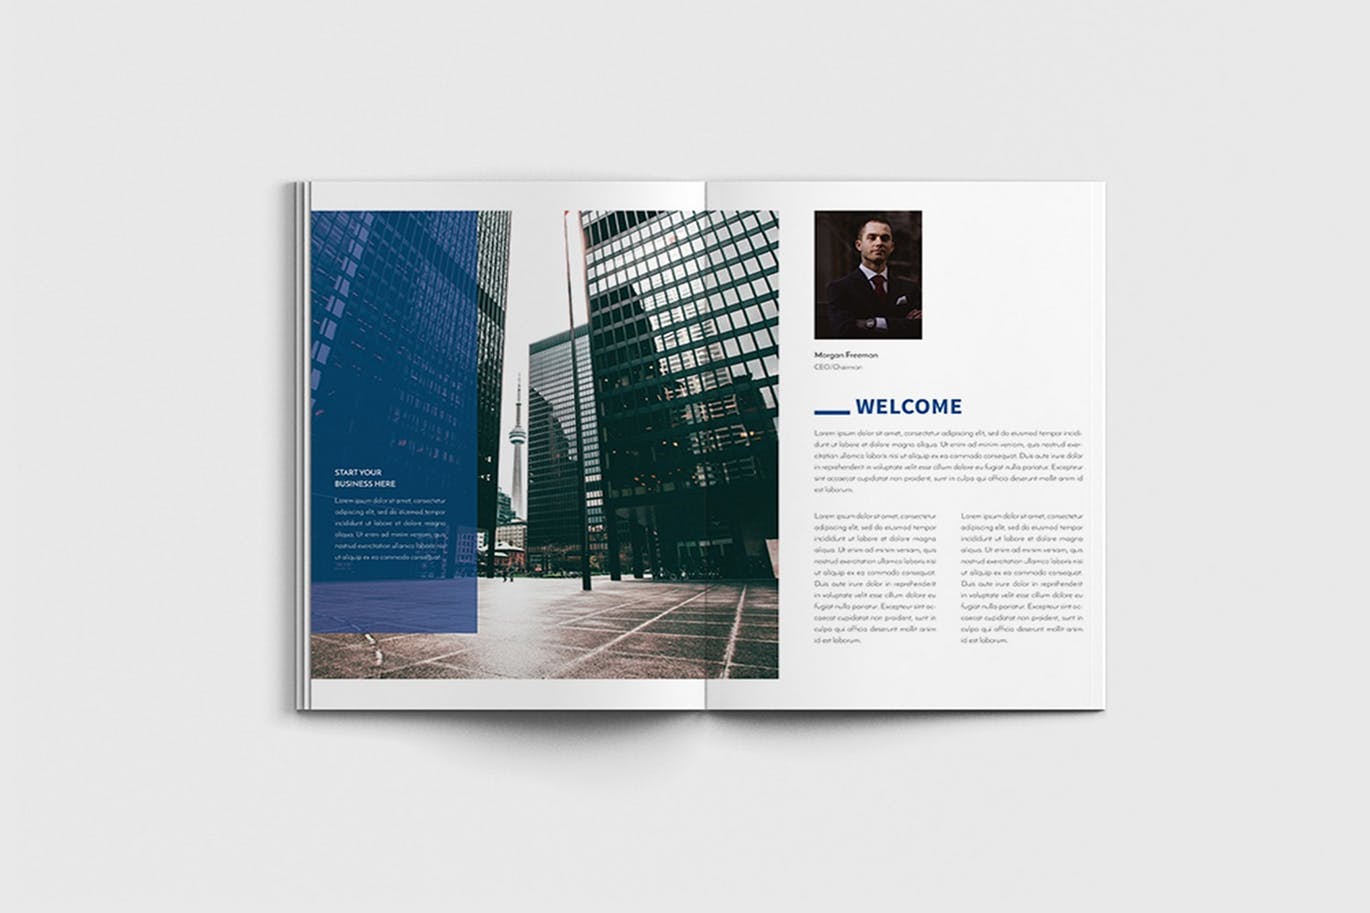 商业计划书/企业简介宣传画册设计模板 Walkers – A4 Business Brochure Template插图1